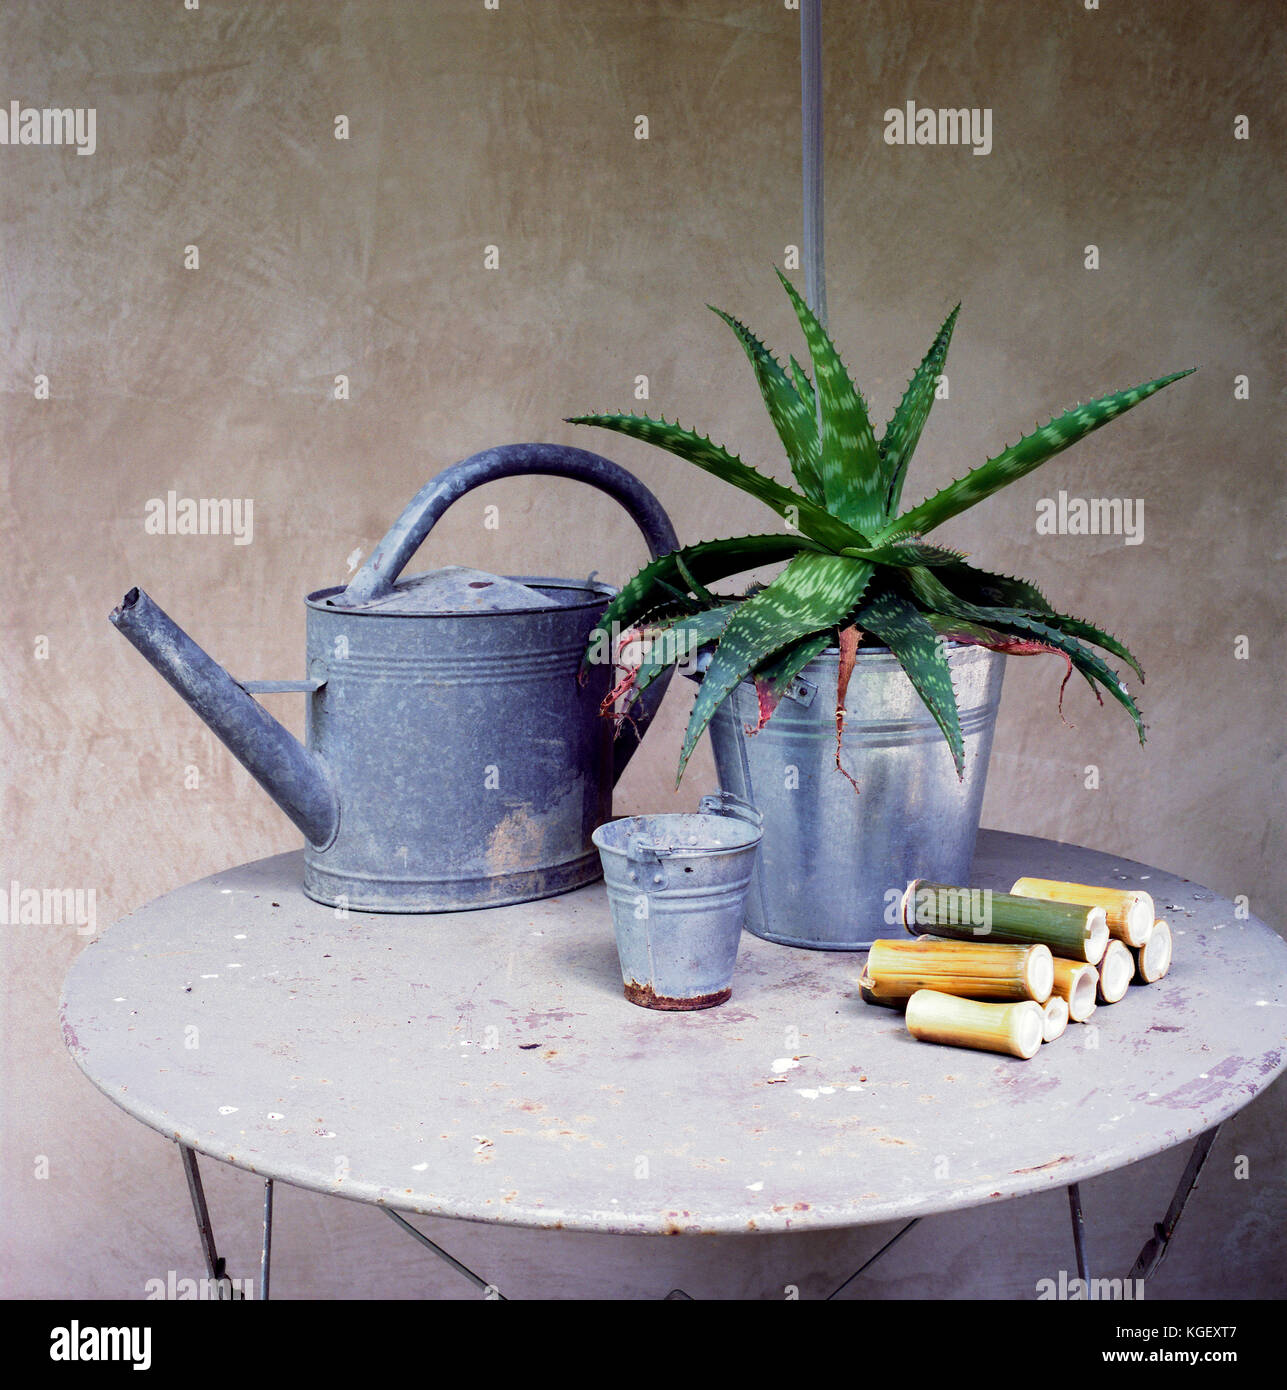 Los bodegones de objetos y herramientas procedentes de un jardín: una regadera, una planta grasa una pequeña cuchara de metal y algunos pedazos de bambú cortadas en una tabla Foto de stock